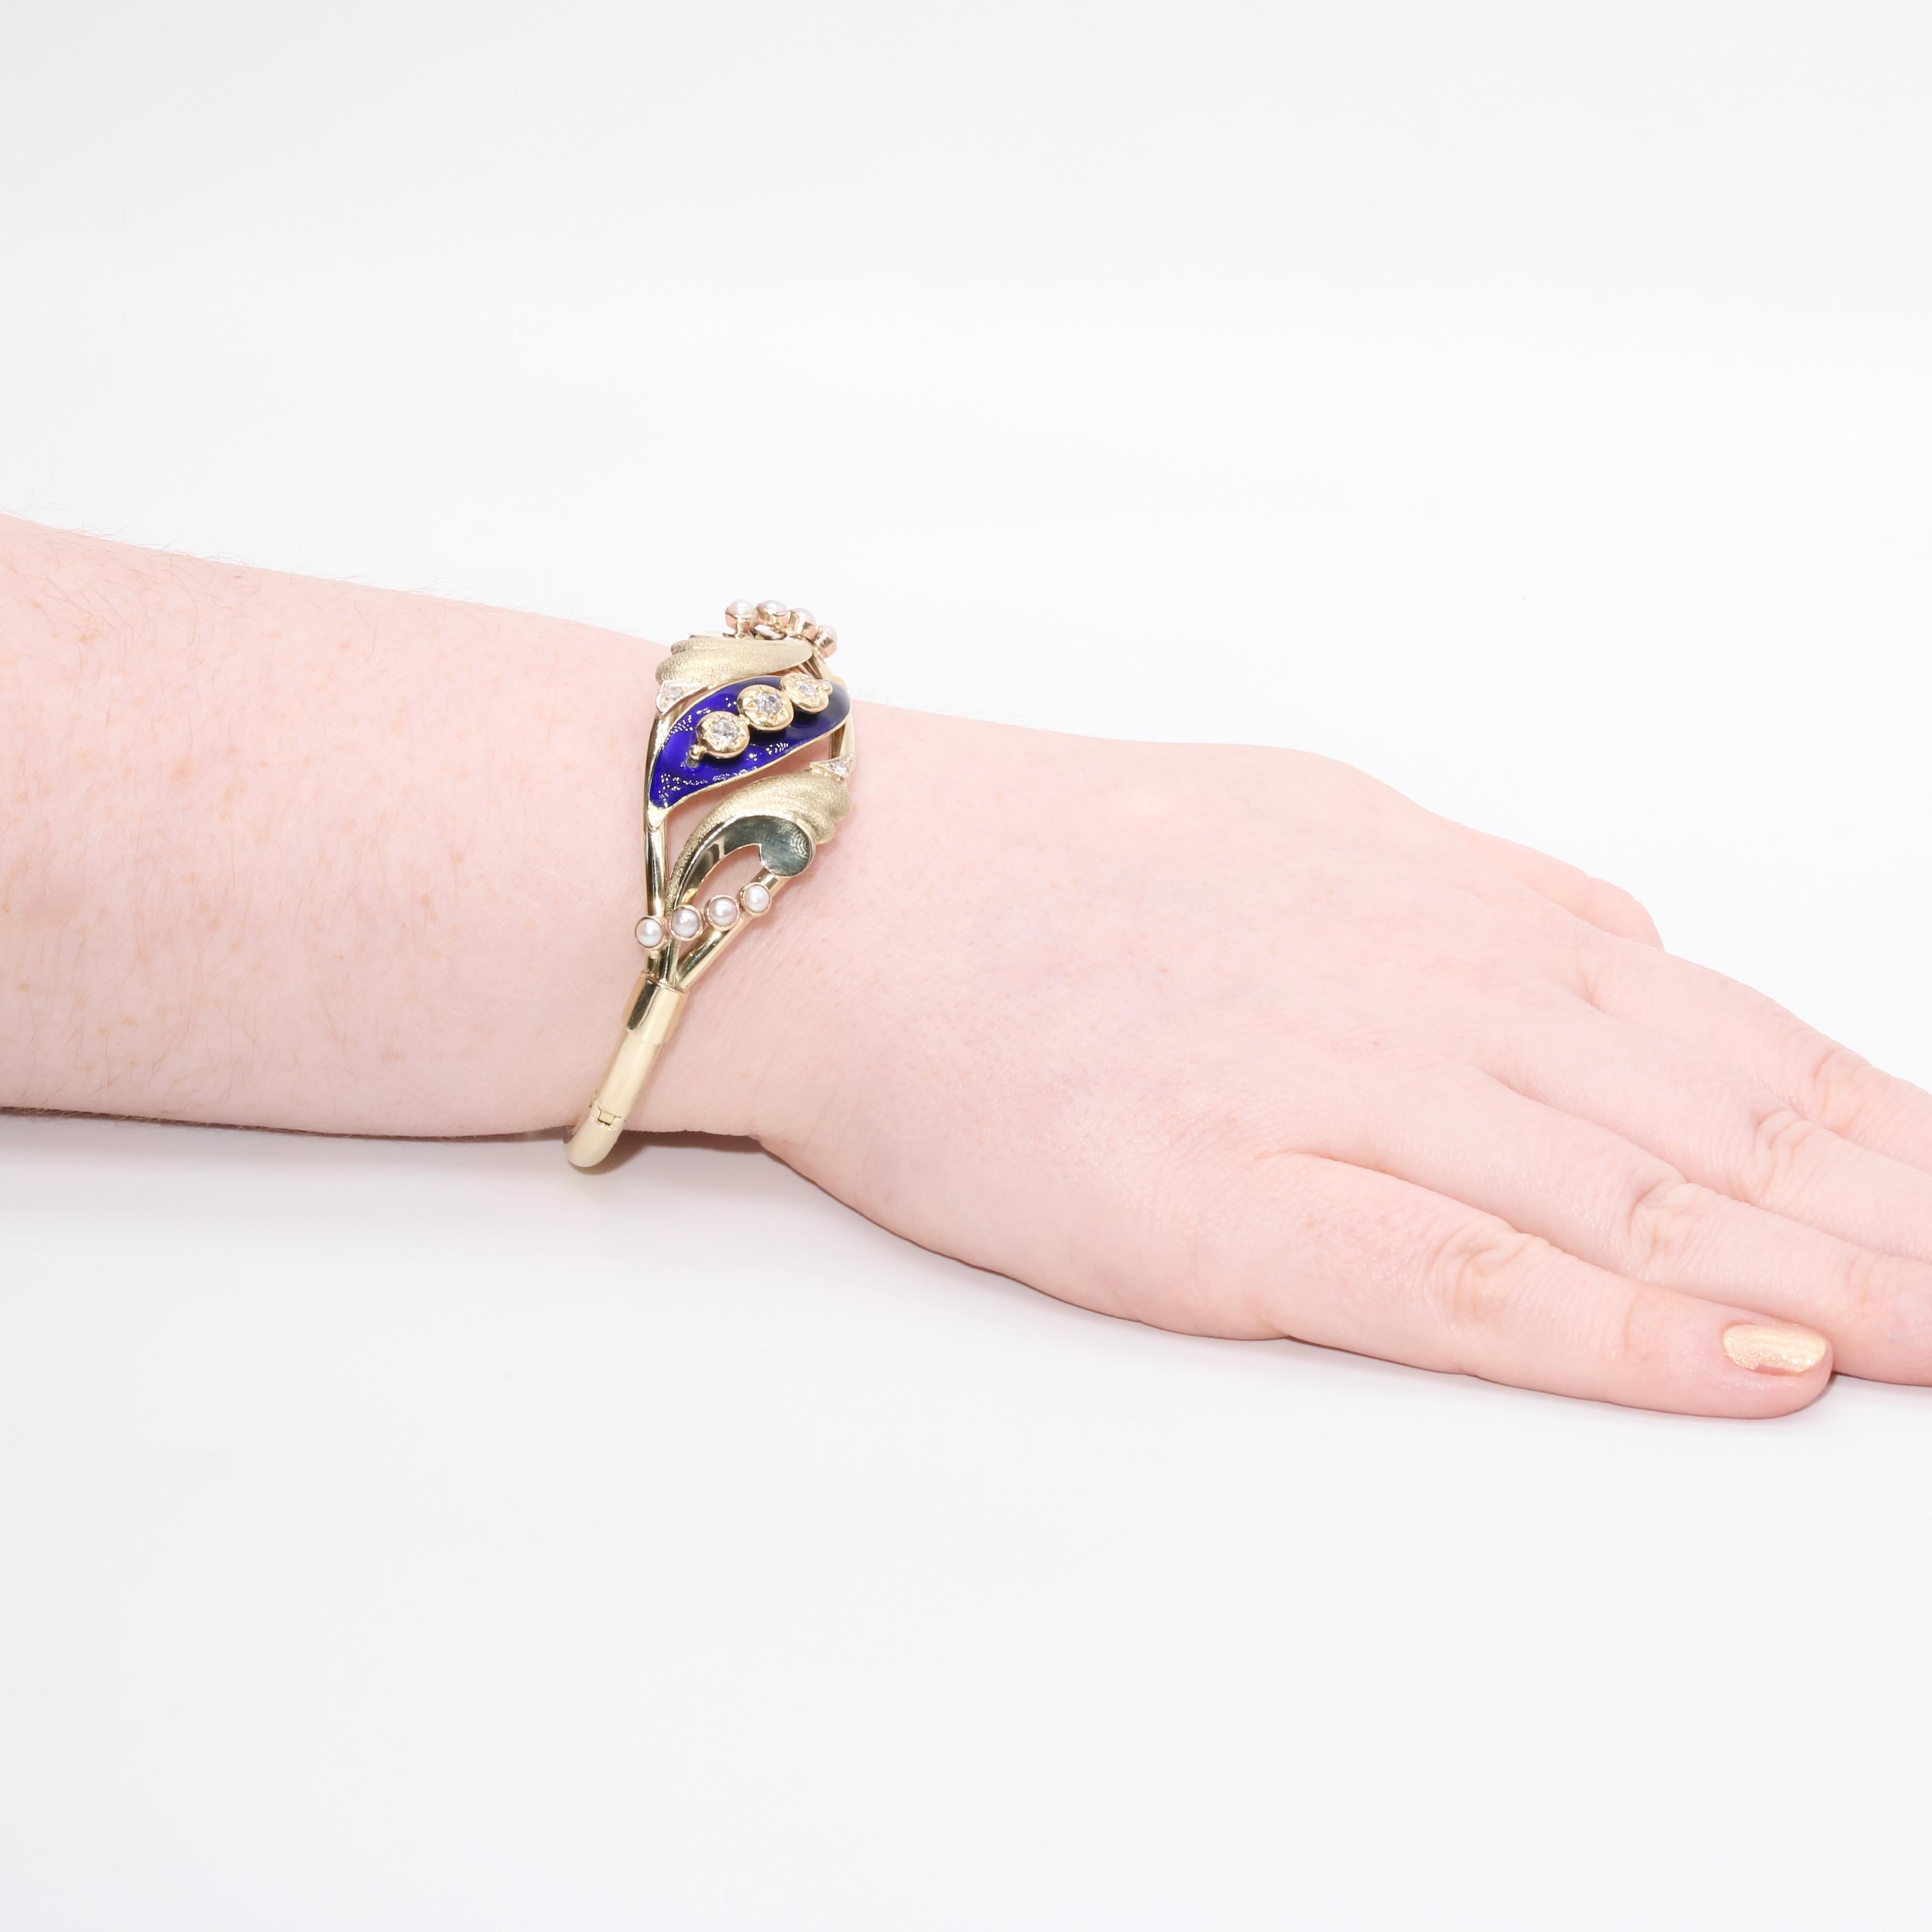 Ein viktorianisches Armband aus Diamanten, Perlen, Emaille und Gold, bestehend aus fünf Diamanten im Altschliff, acht Saatperlen und blauer Emaille, gefasst in 14 Karat Gelbgold. 

Dieses wunderschöne Armband hat eine zentrale blattförmige Platte,